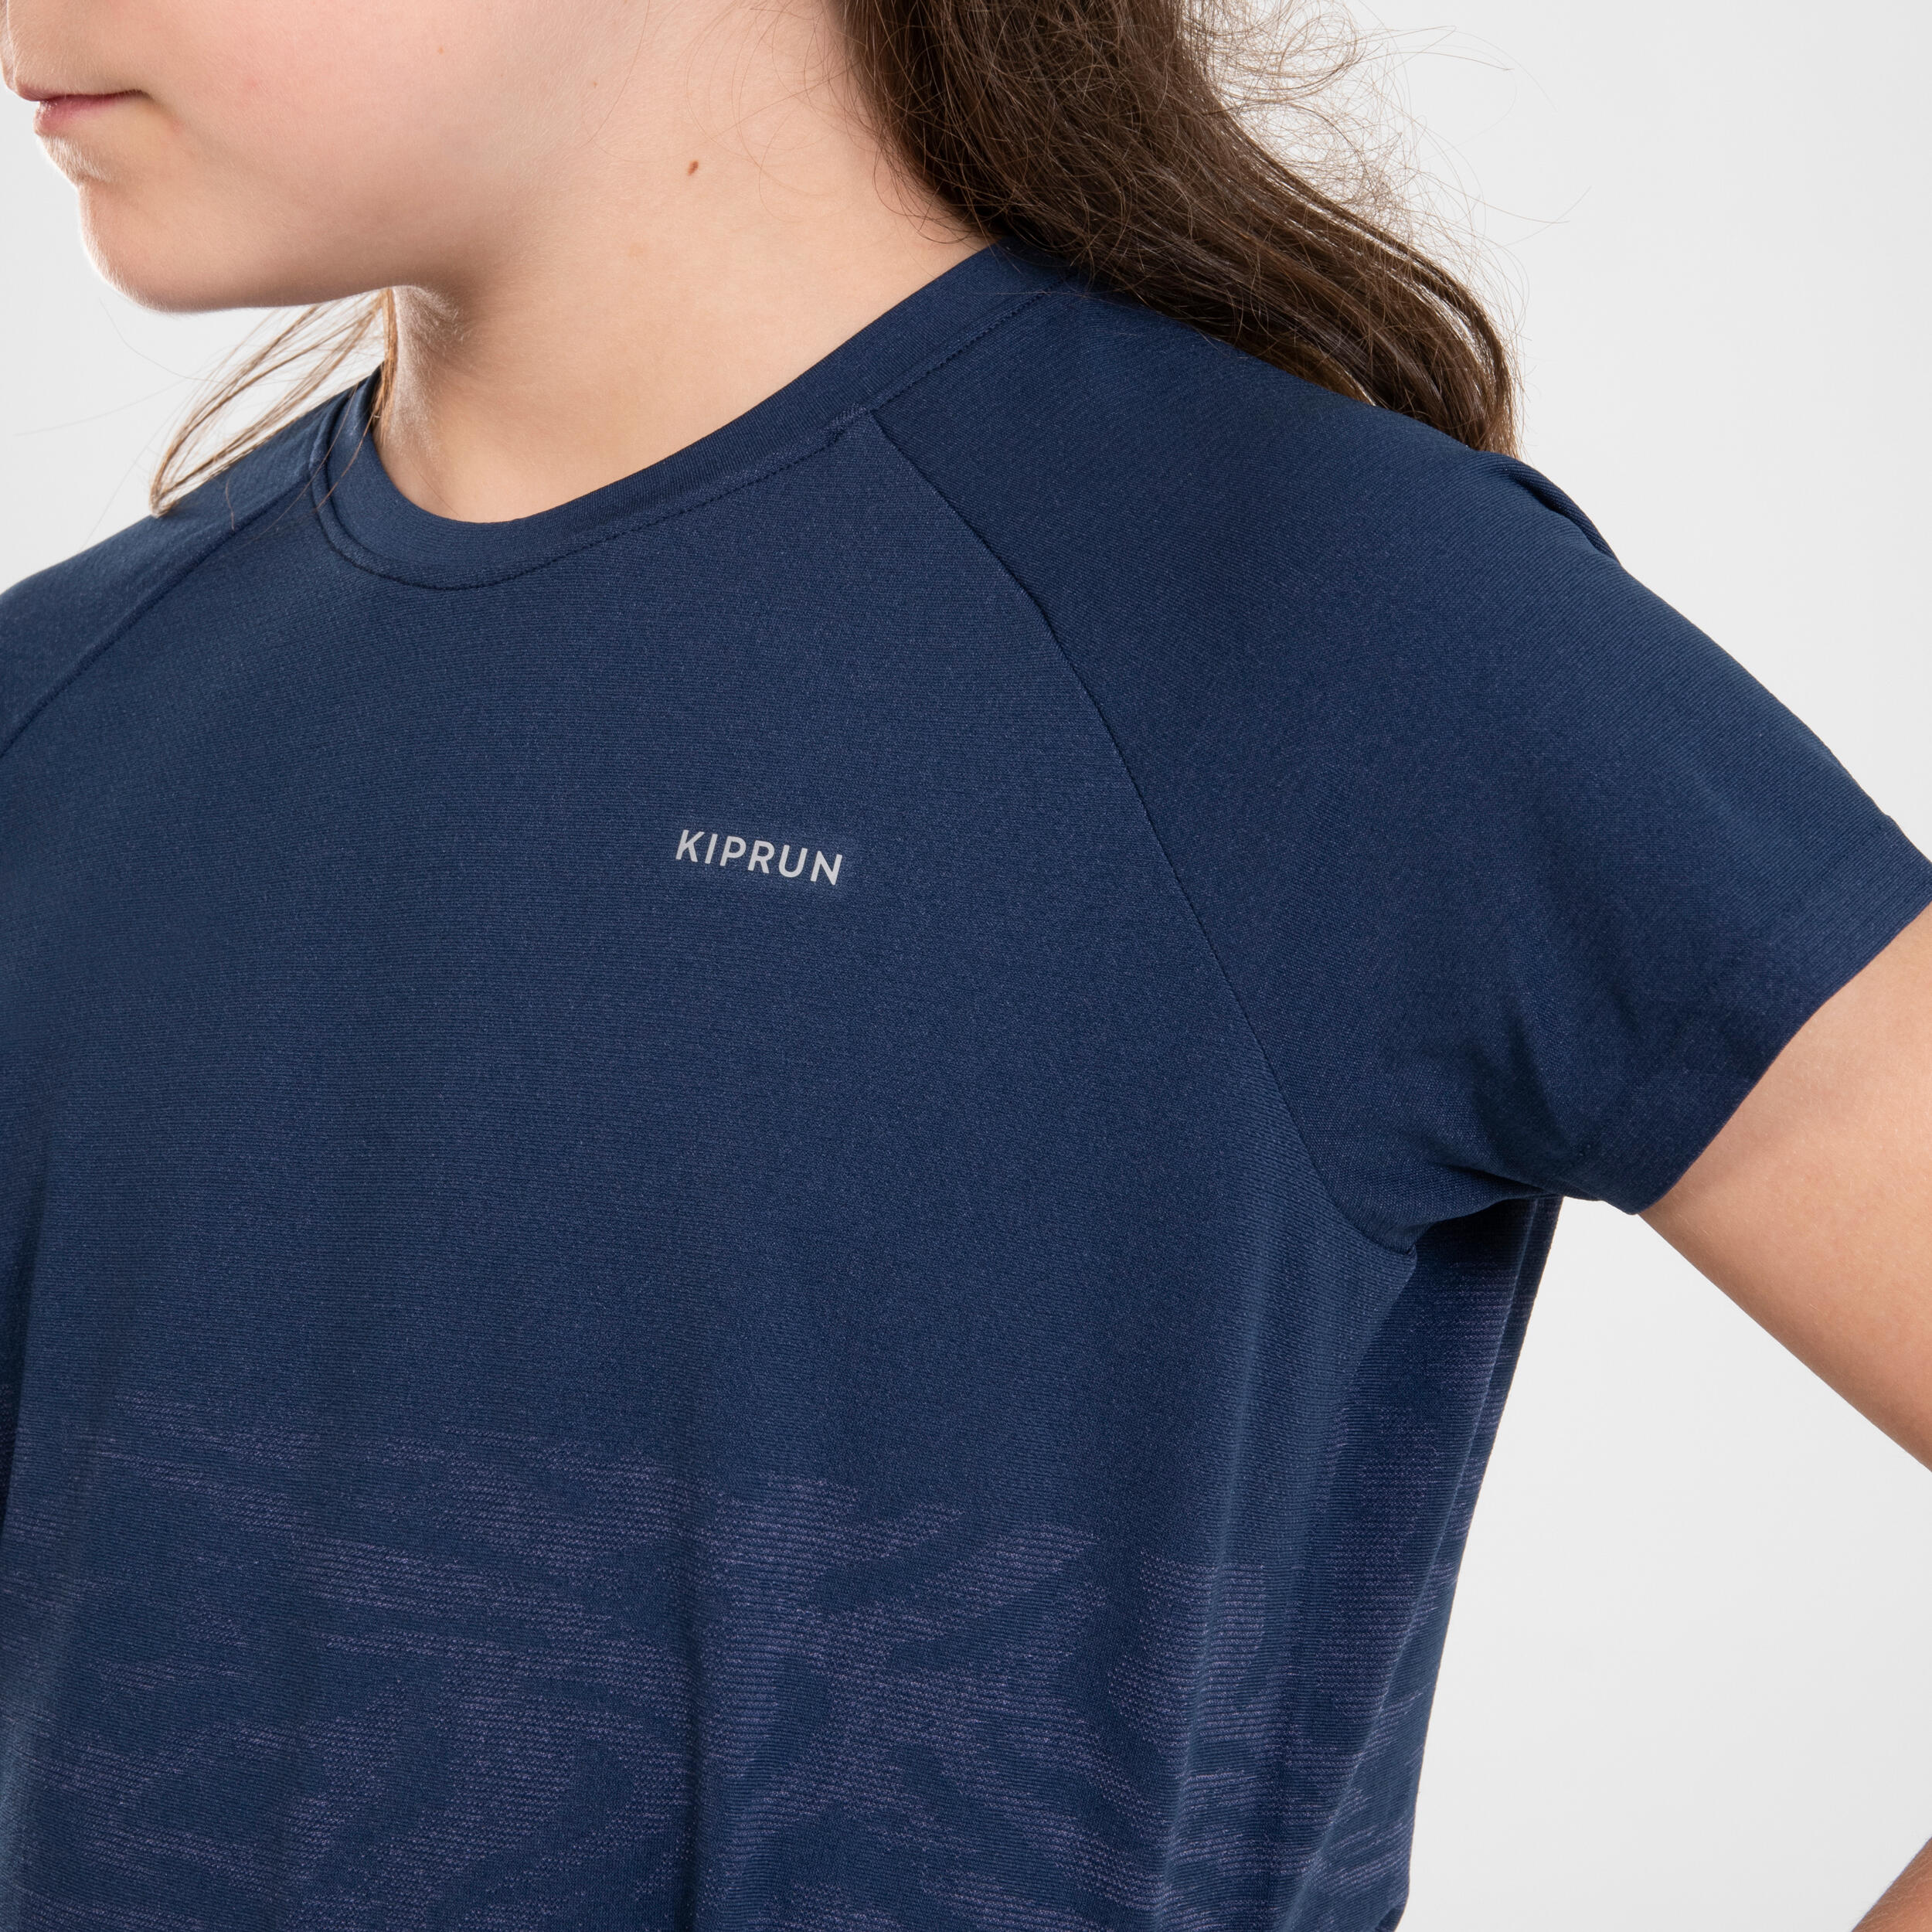  KIPRUN CARE Girls' Seamless Running T-shirt - Navy 4/10